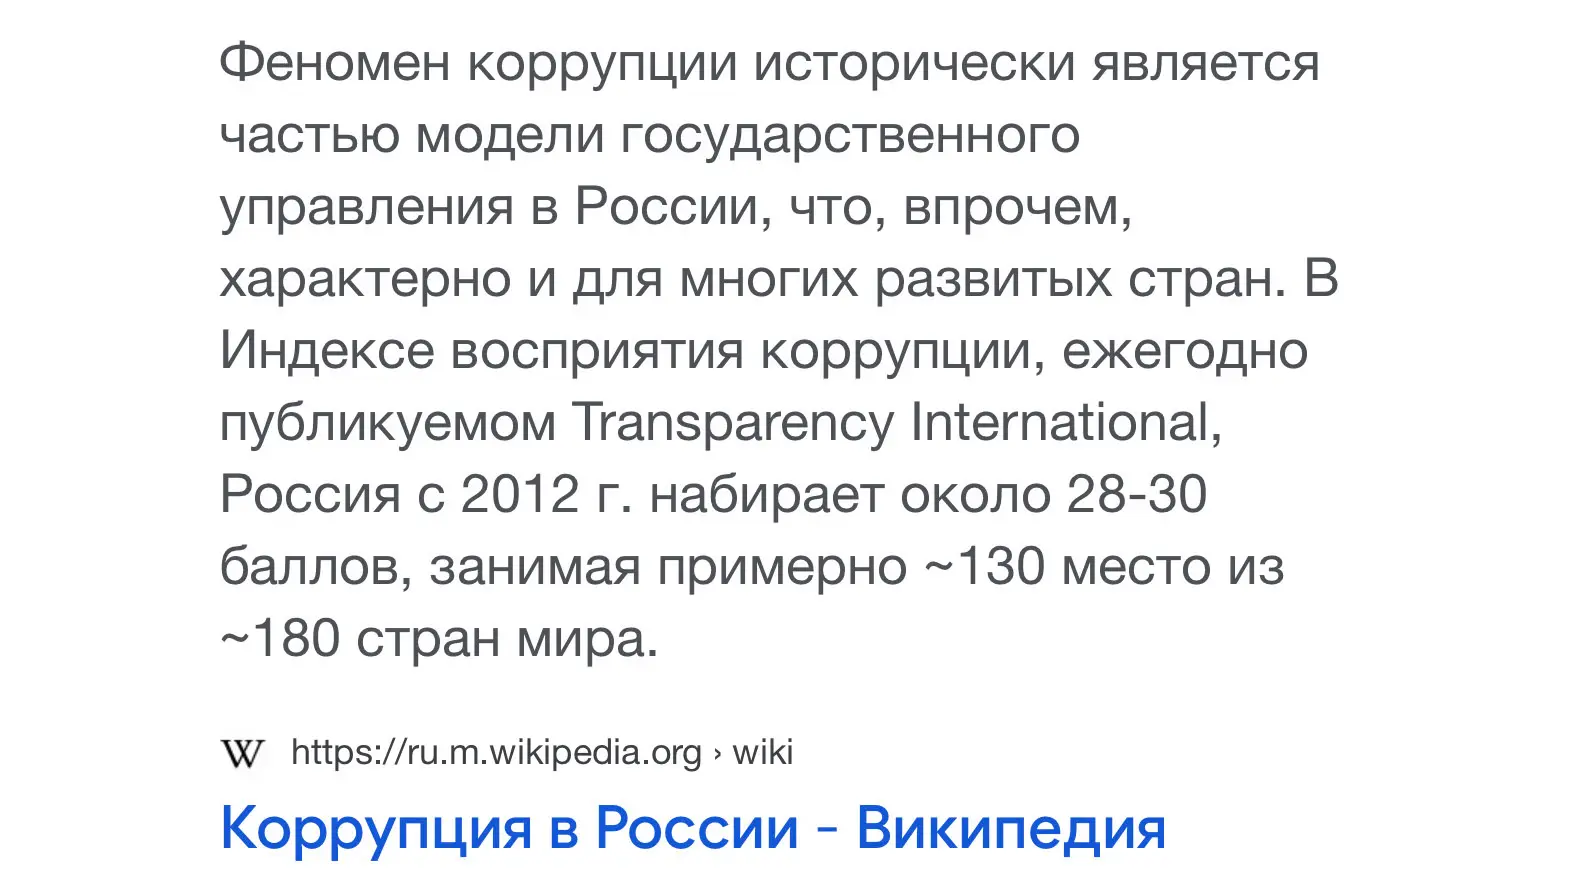 Коррупция в России. ≈130 место из 180 стран мира